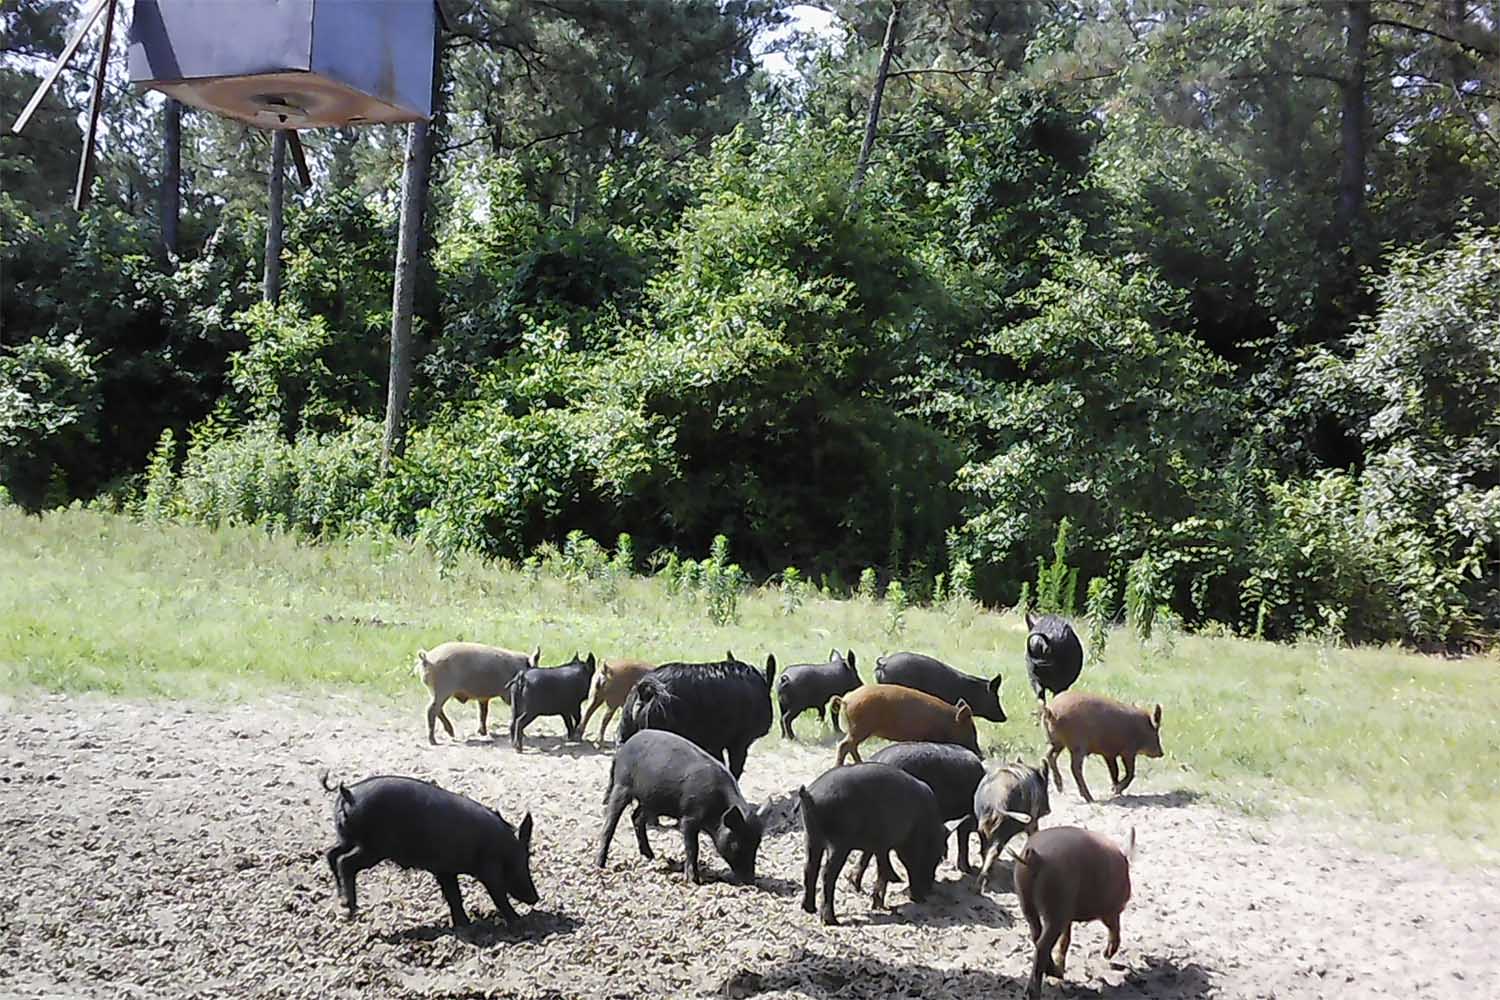 Many pigs under feeder